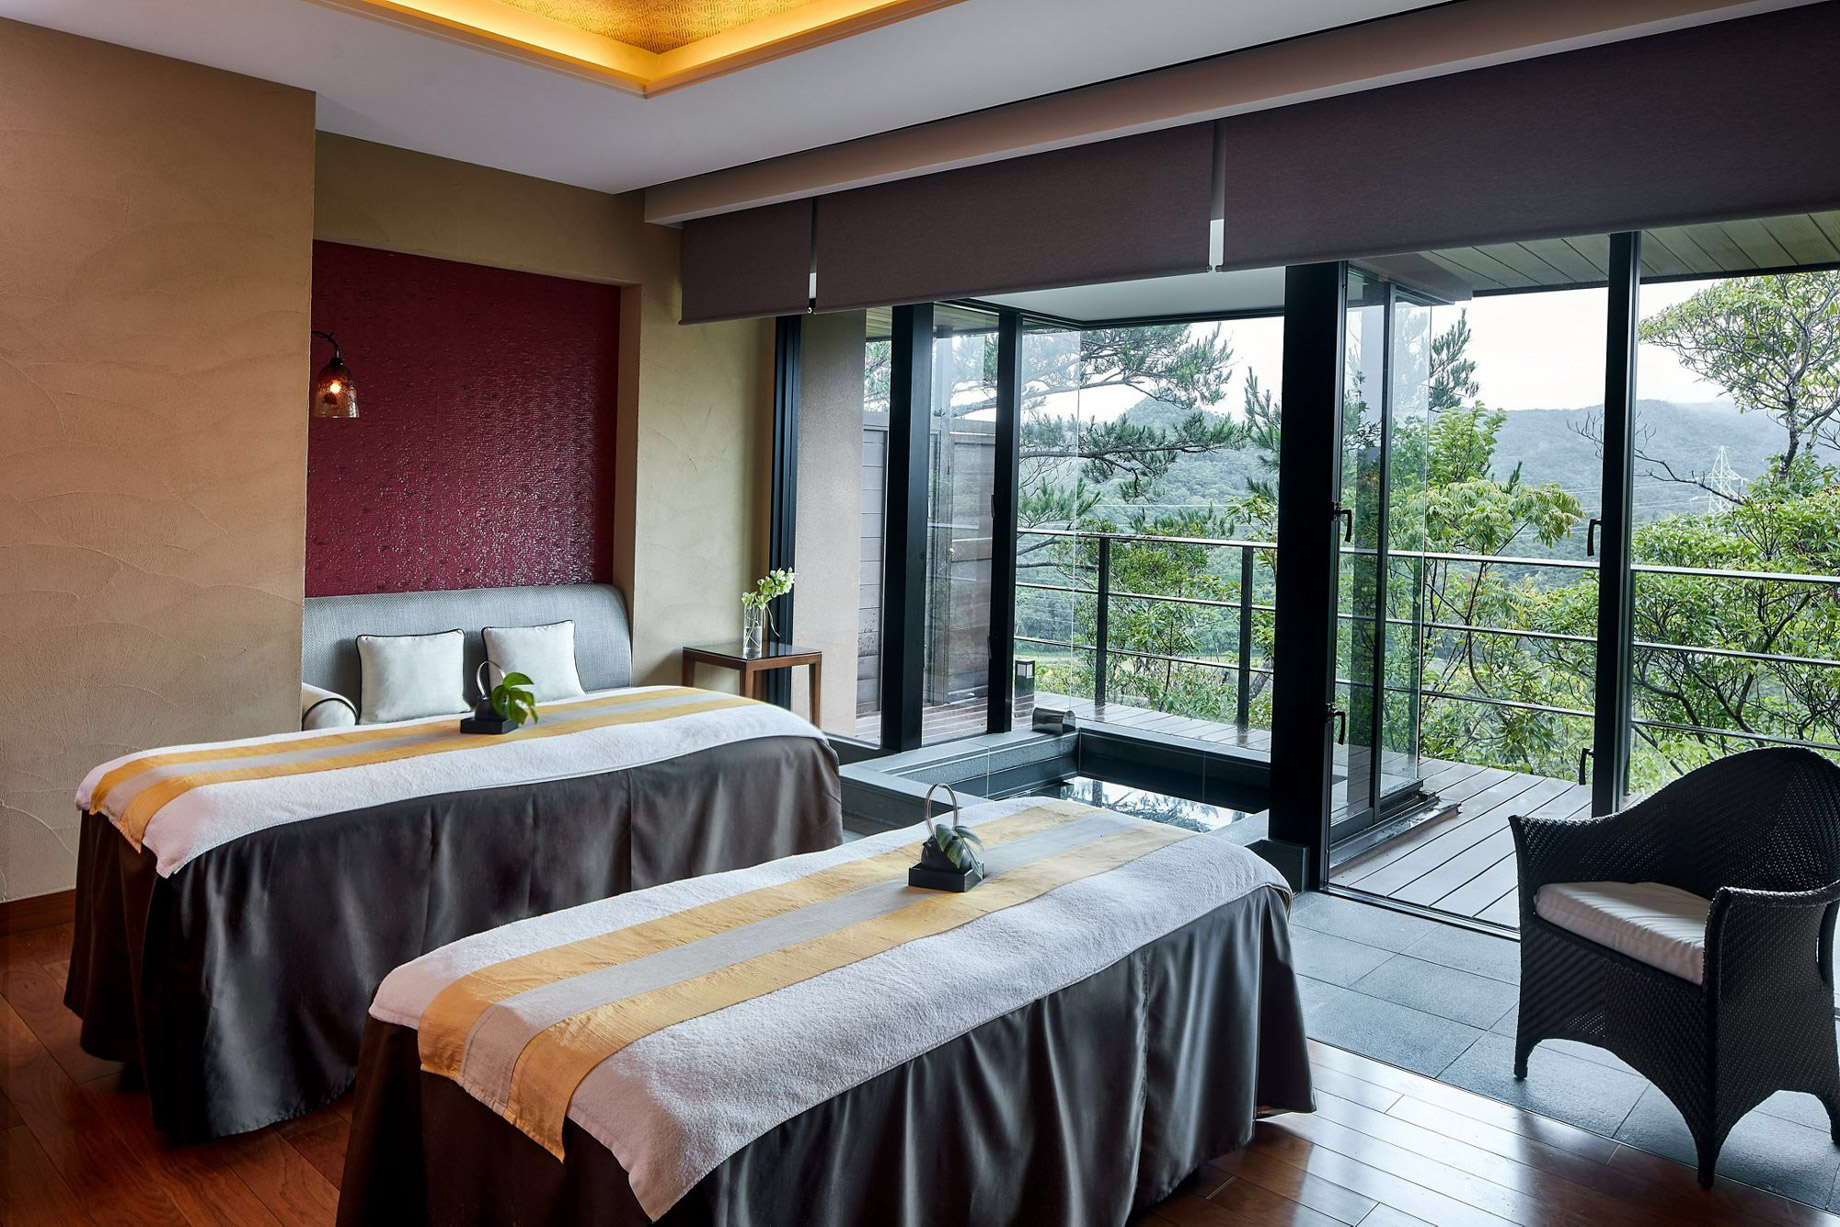 The Ritz-Carlton, Okinawa Hotel – Okinawa, Japan – Spa Treatment Room